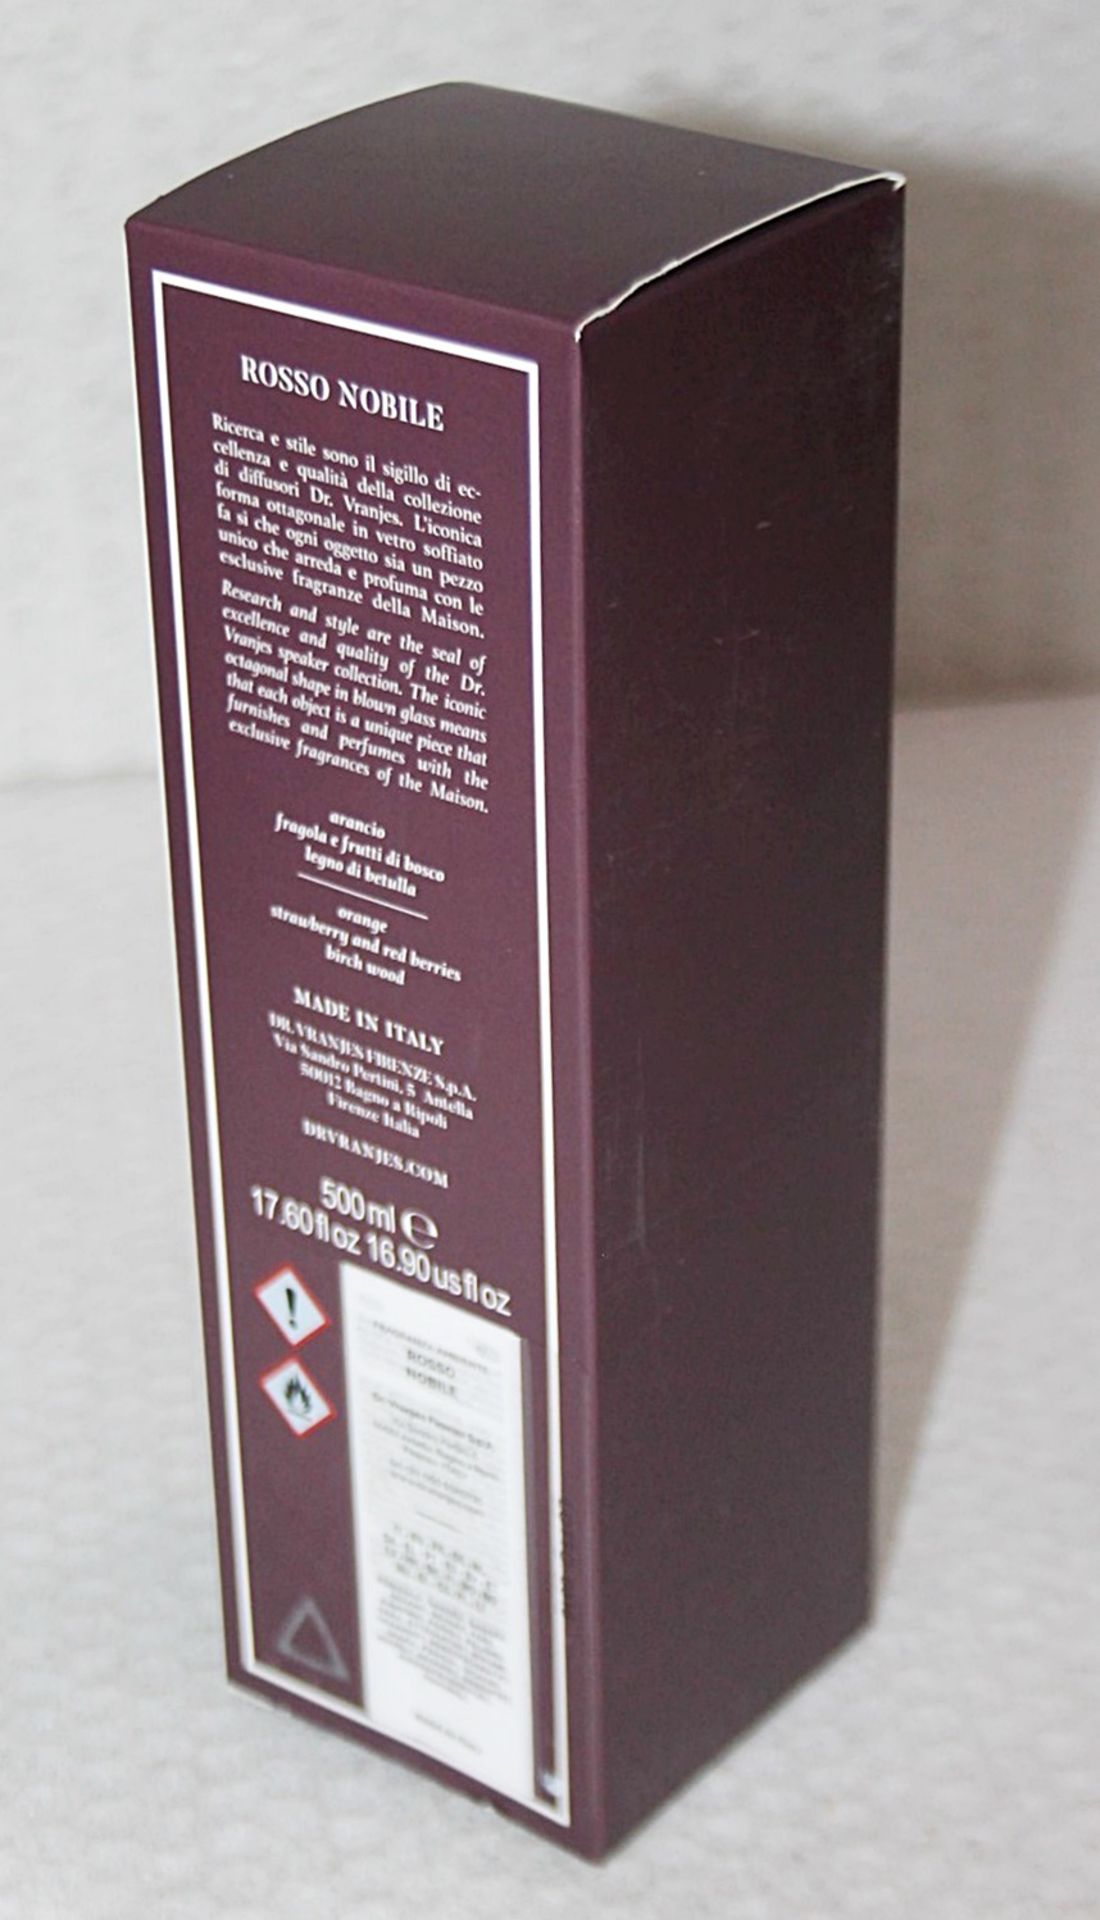 1 x DR. VRANJES FIRENZE 'Rosso Nobile' Fragrance Refill (500ml) - Original Price £71.95 - Unused - Image 7 of 7